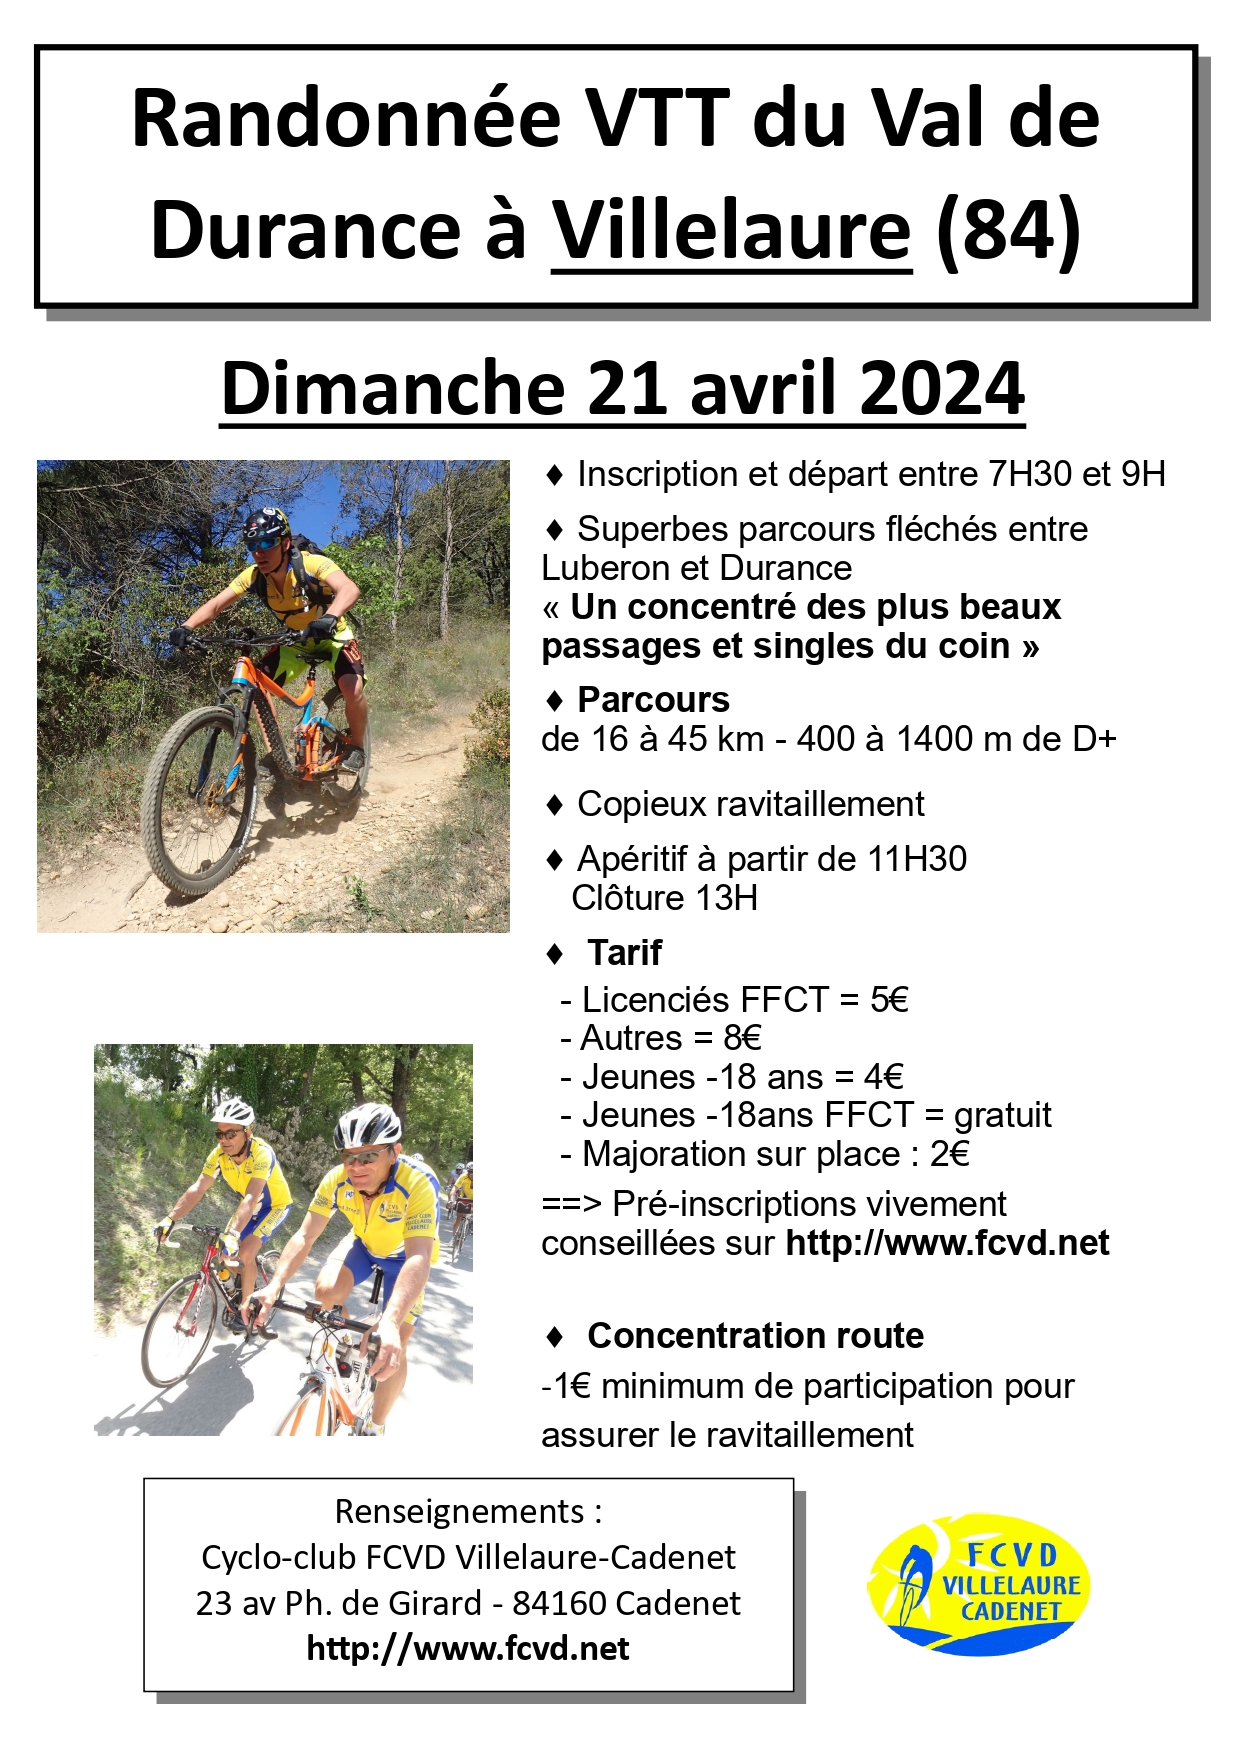 Affiche de La 37ème Randonnée VTT du Val de Durance à Villelaure